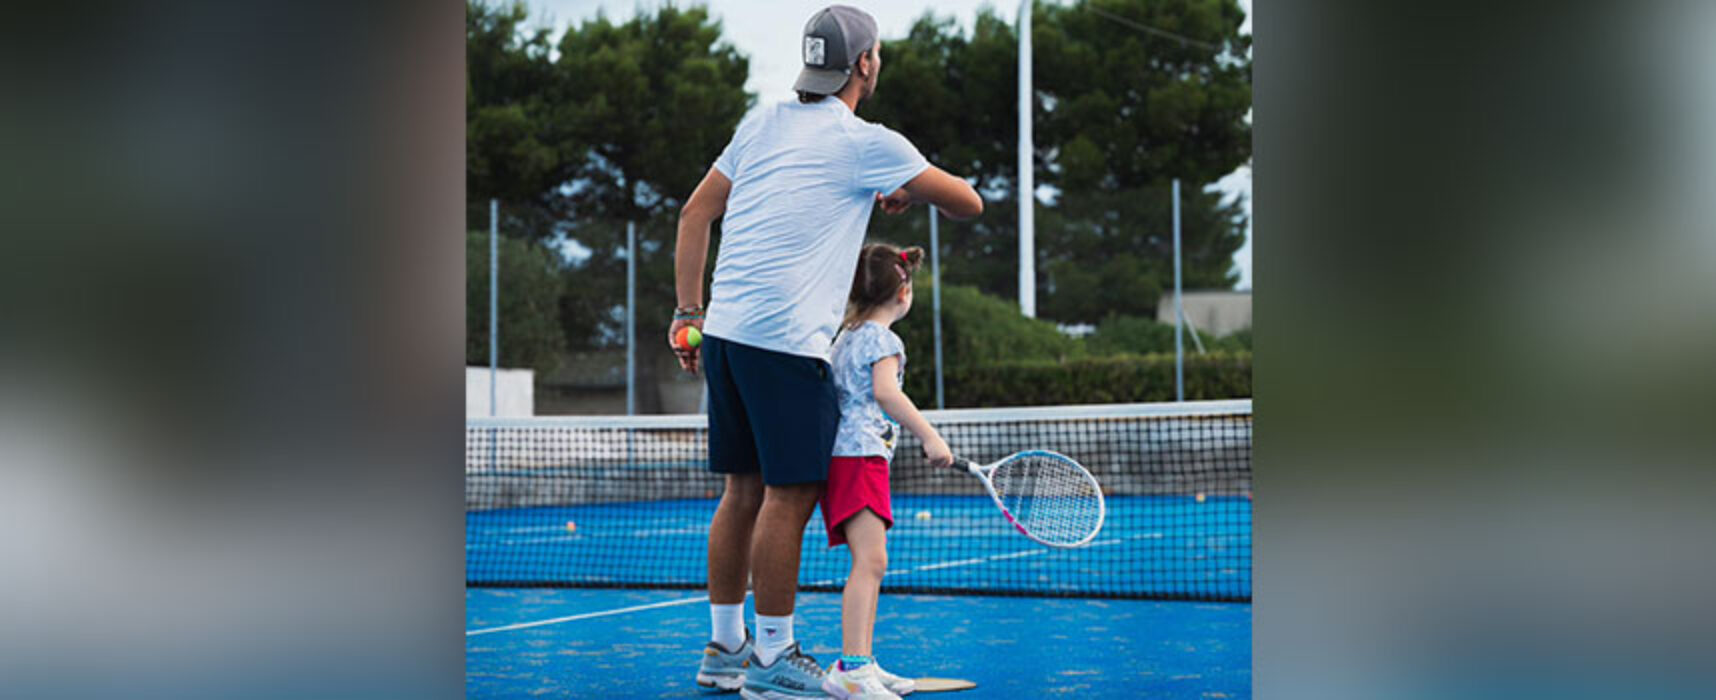 Sporting Tennis Club Bisceglie ospita il “Be Active, Do Pratice” per attività dei più piccoli